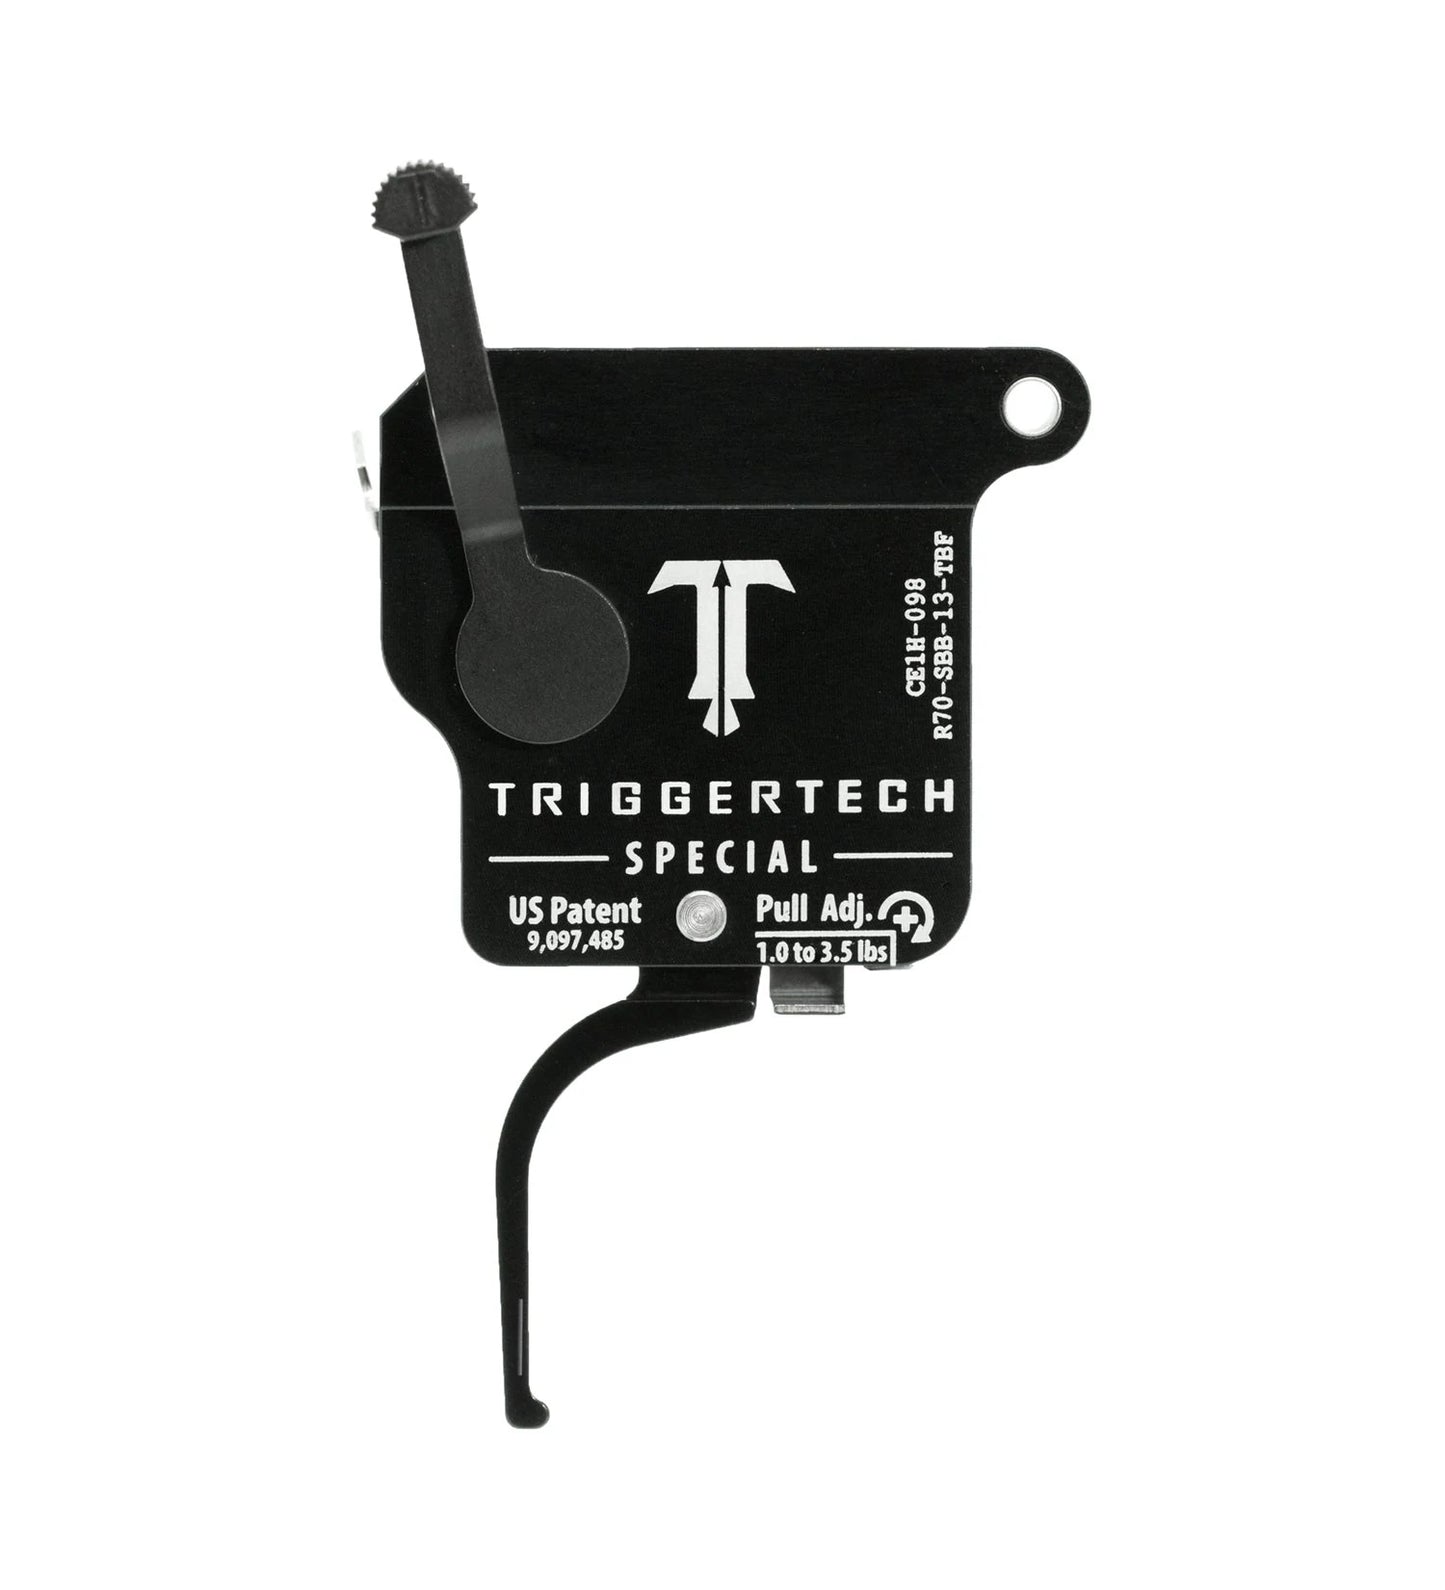 Rem 700 Special Trigger - TriggerTech